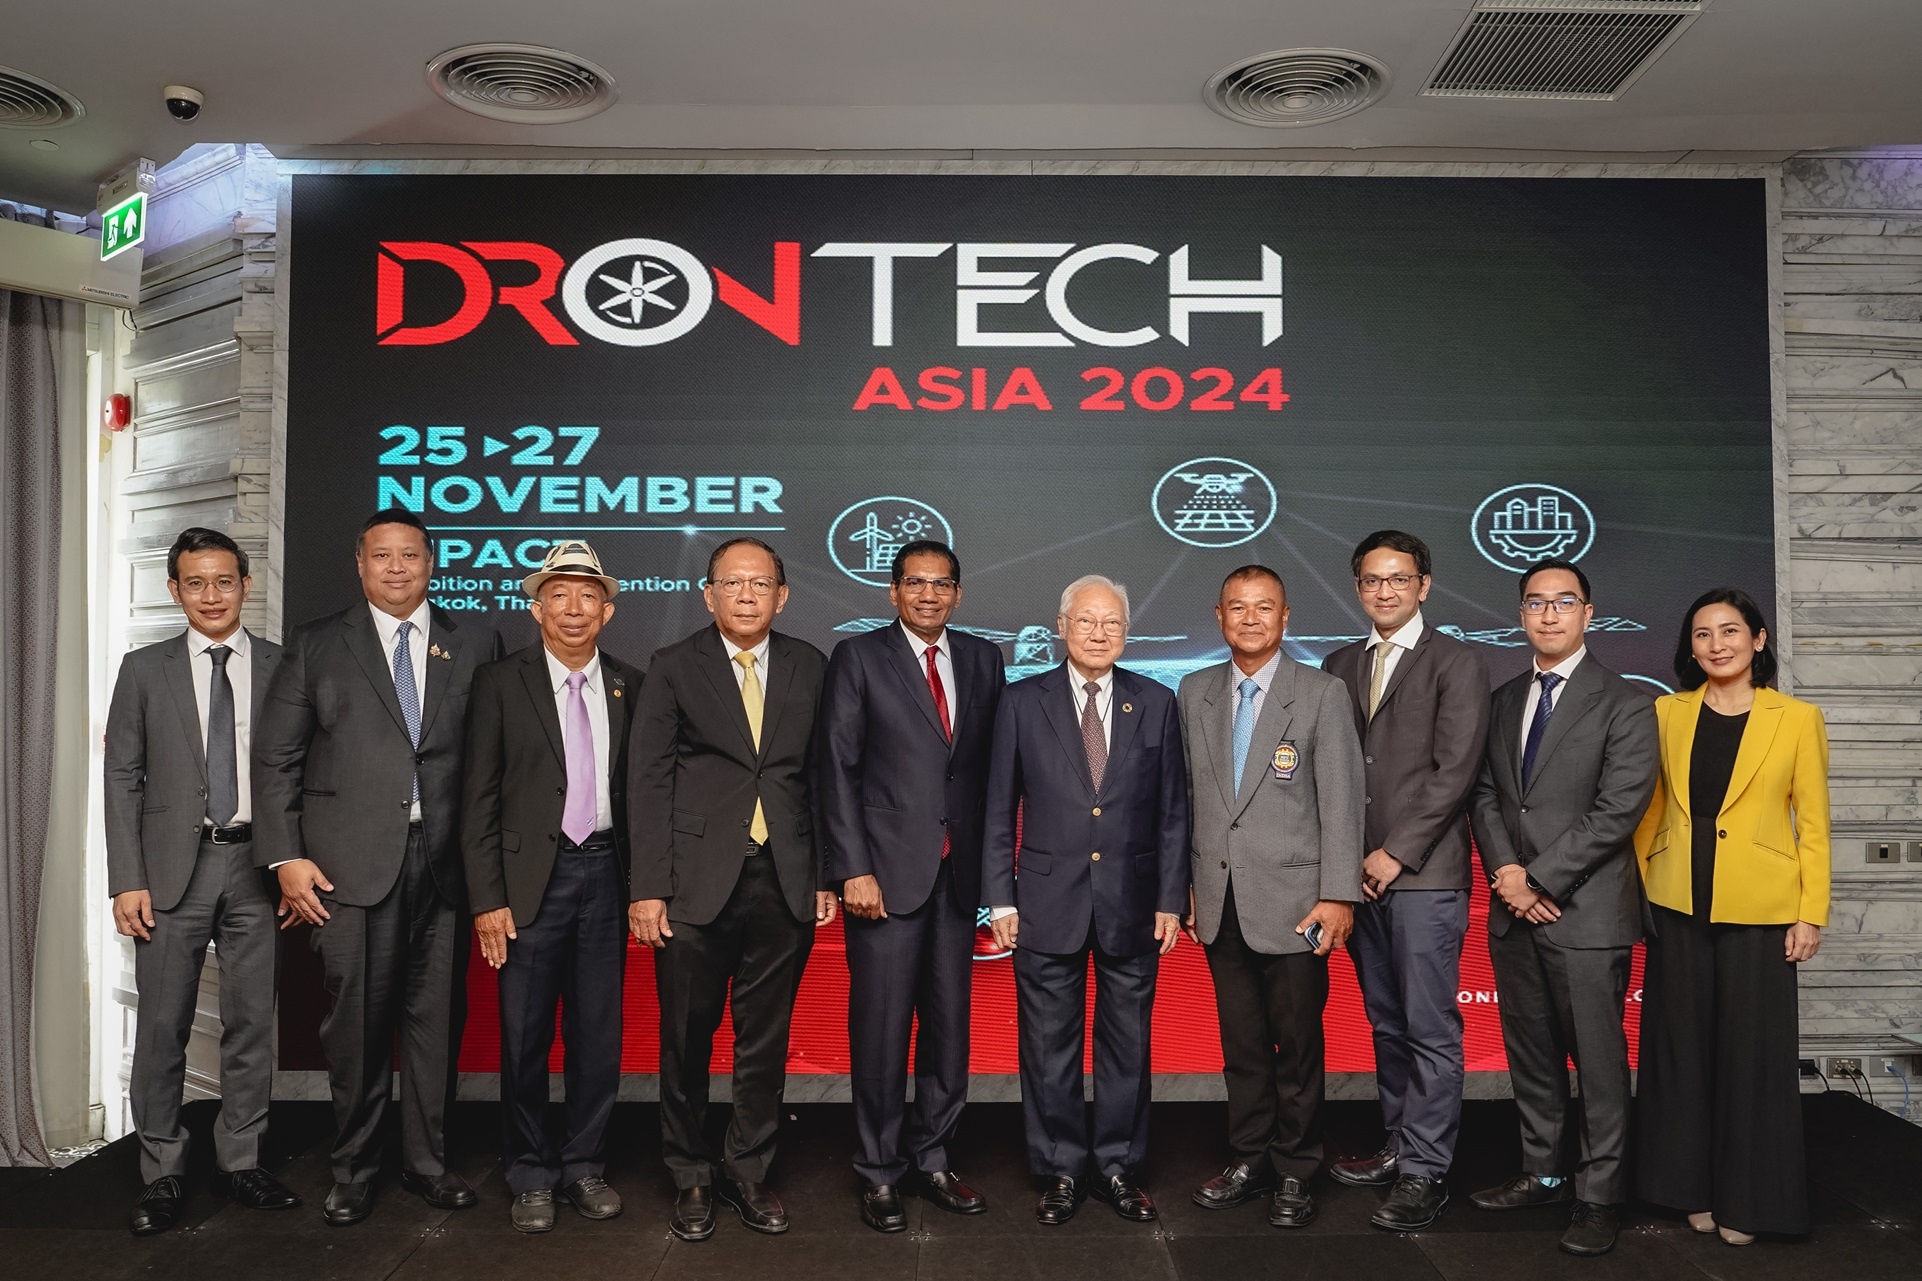 3 DronTech Asia 2024.jpg